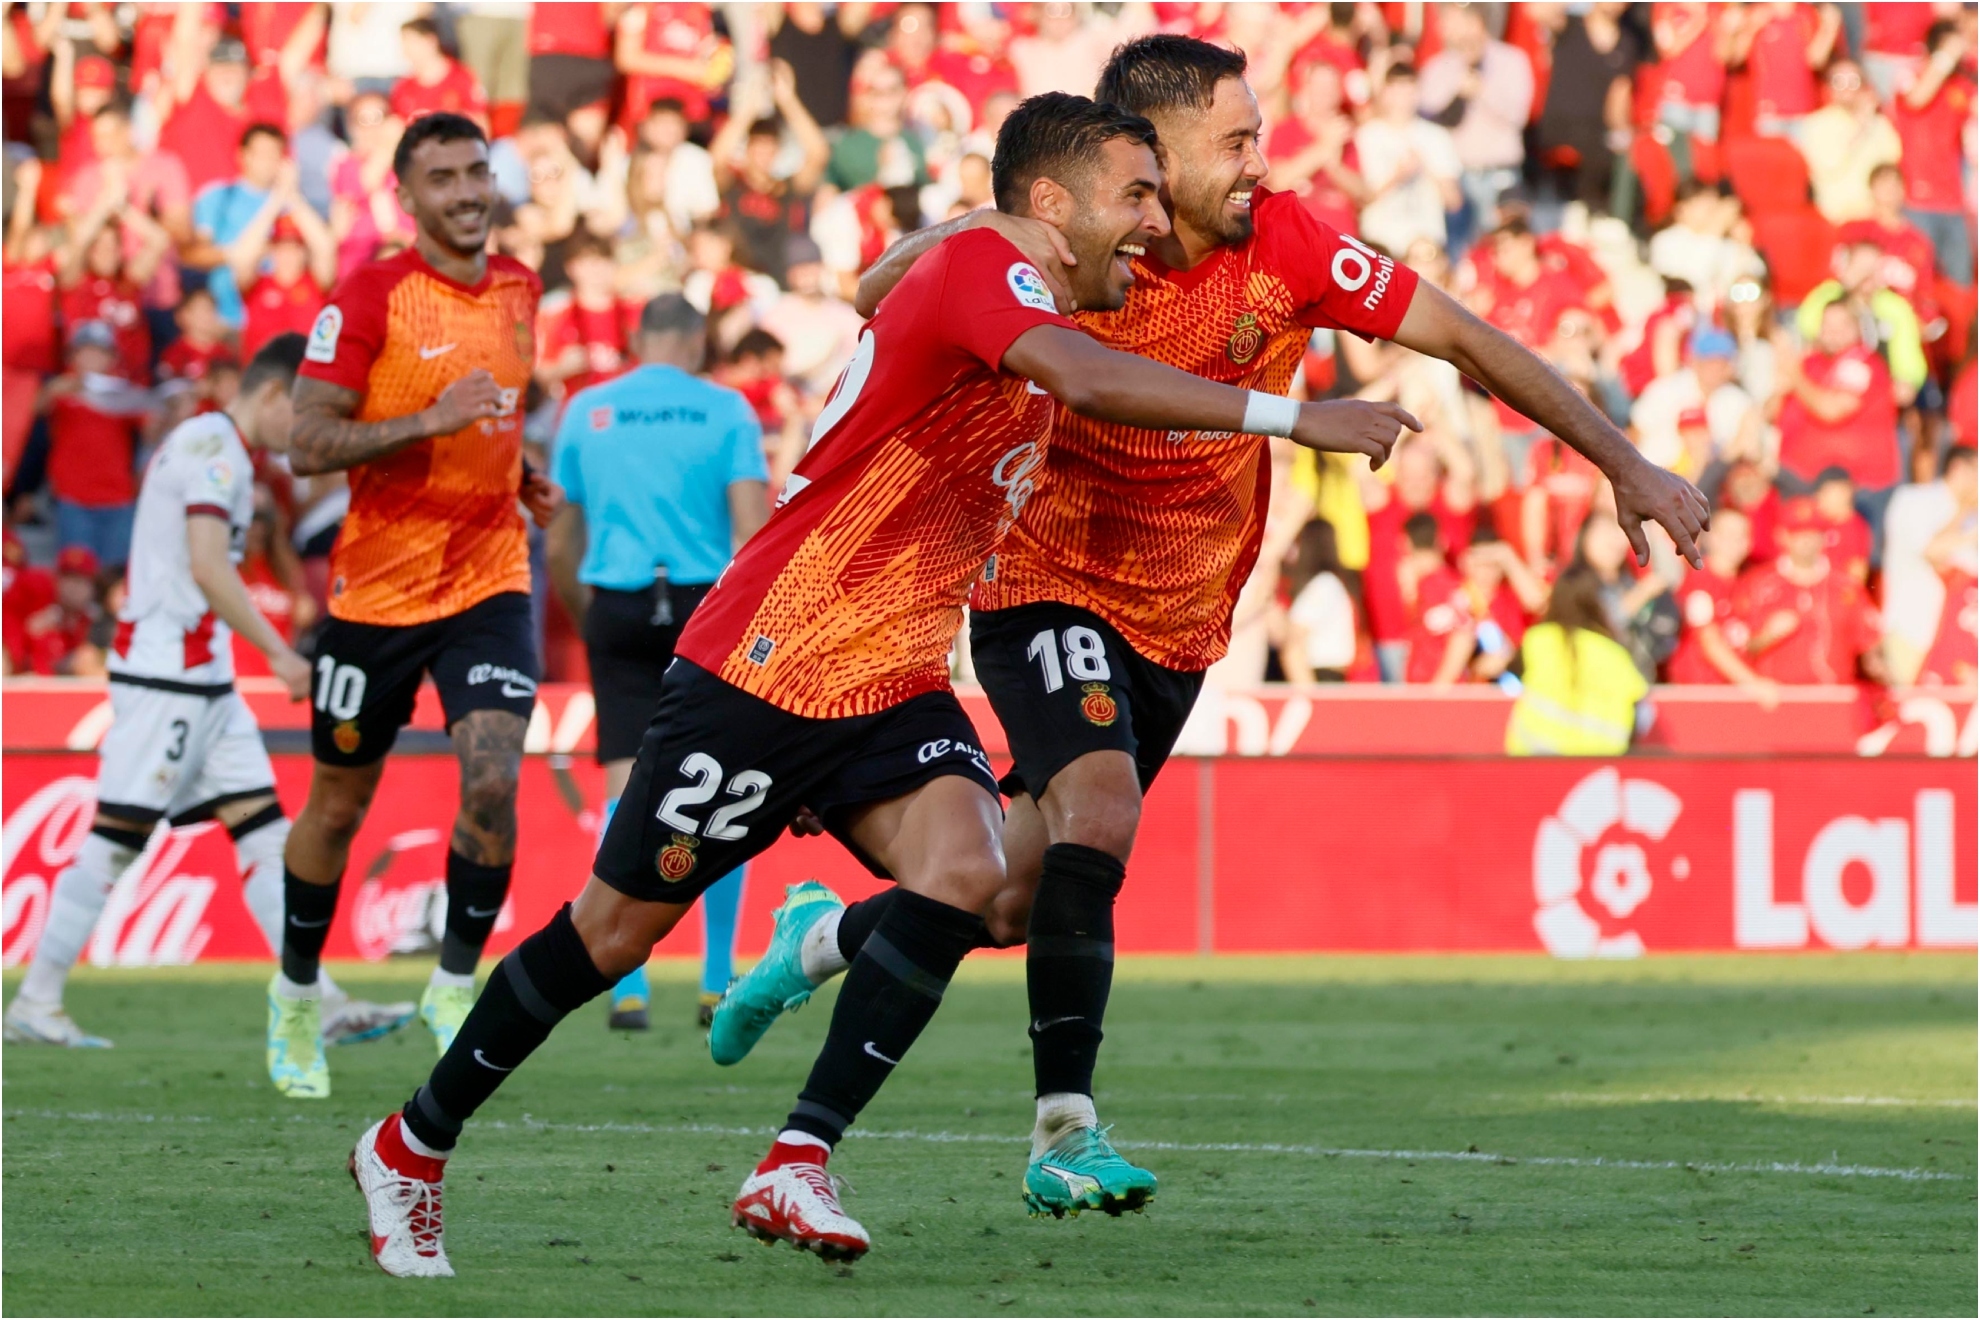 Los bermellones celebran un gol al Rayo Vallecano.